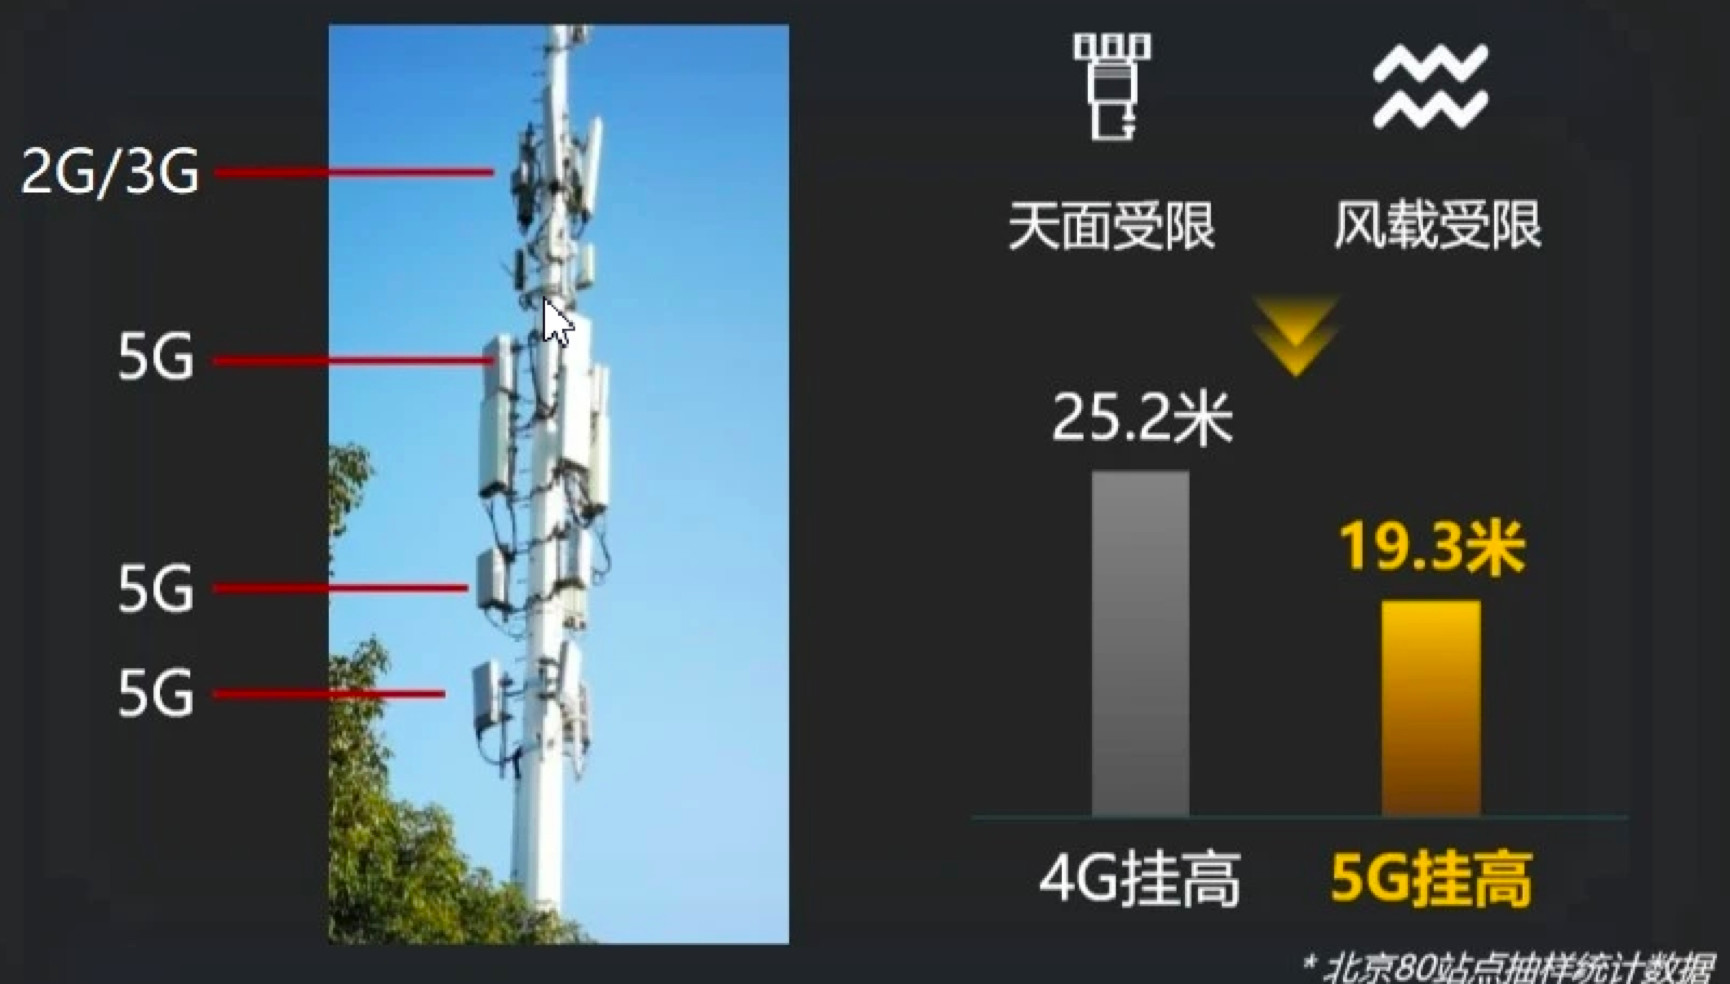 蚌埠铁塔：5G新时代引擎，连接历史与未来